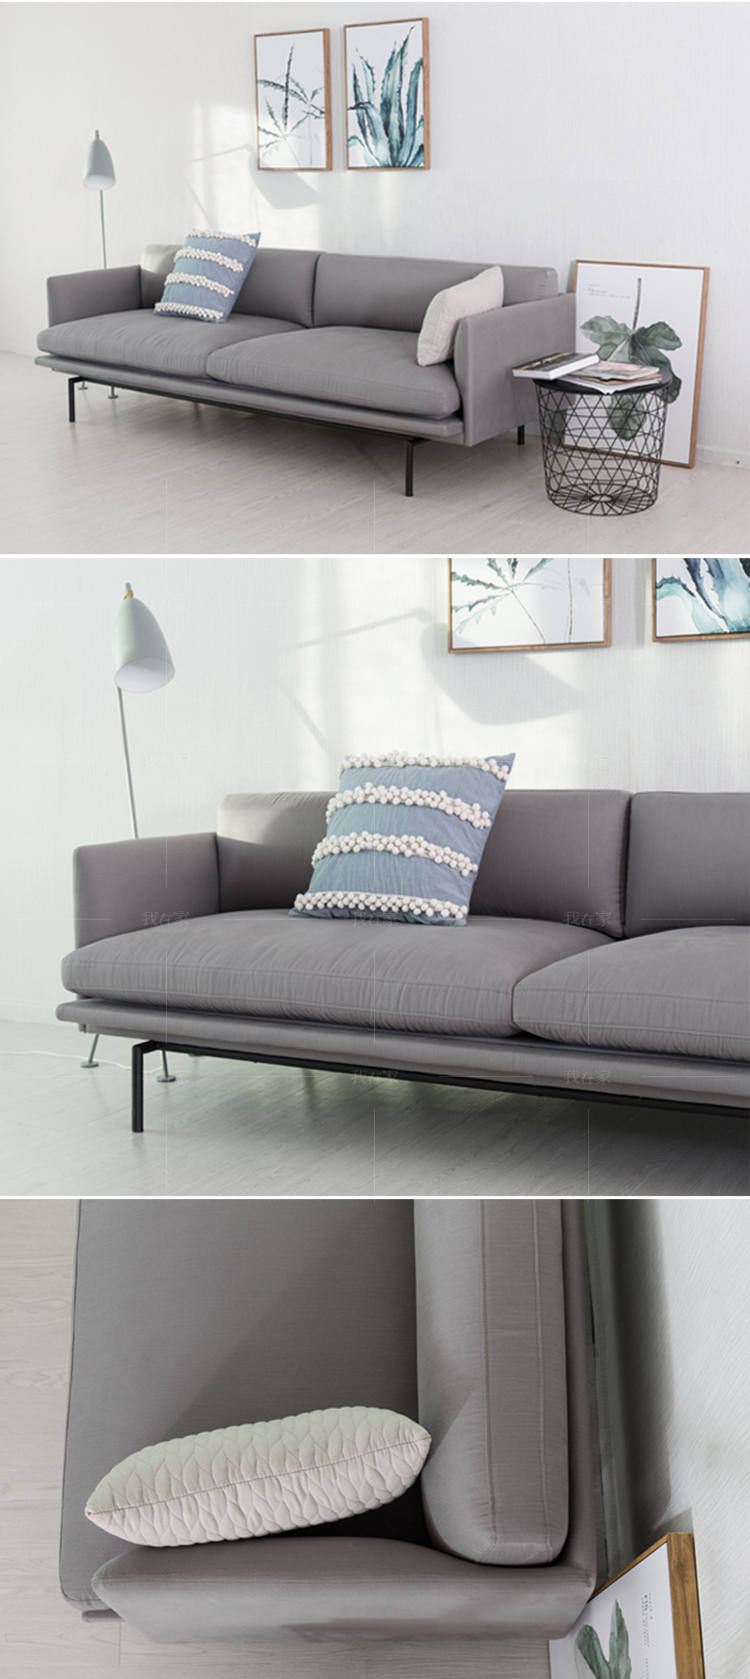 色彩北欧风格Outline布艺沙发的家具详细介绍